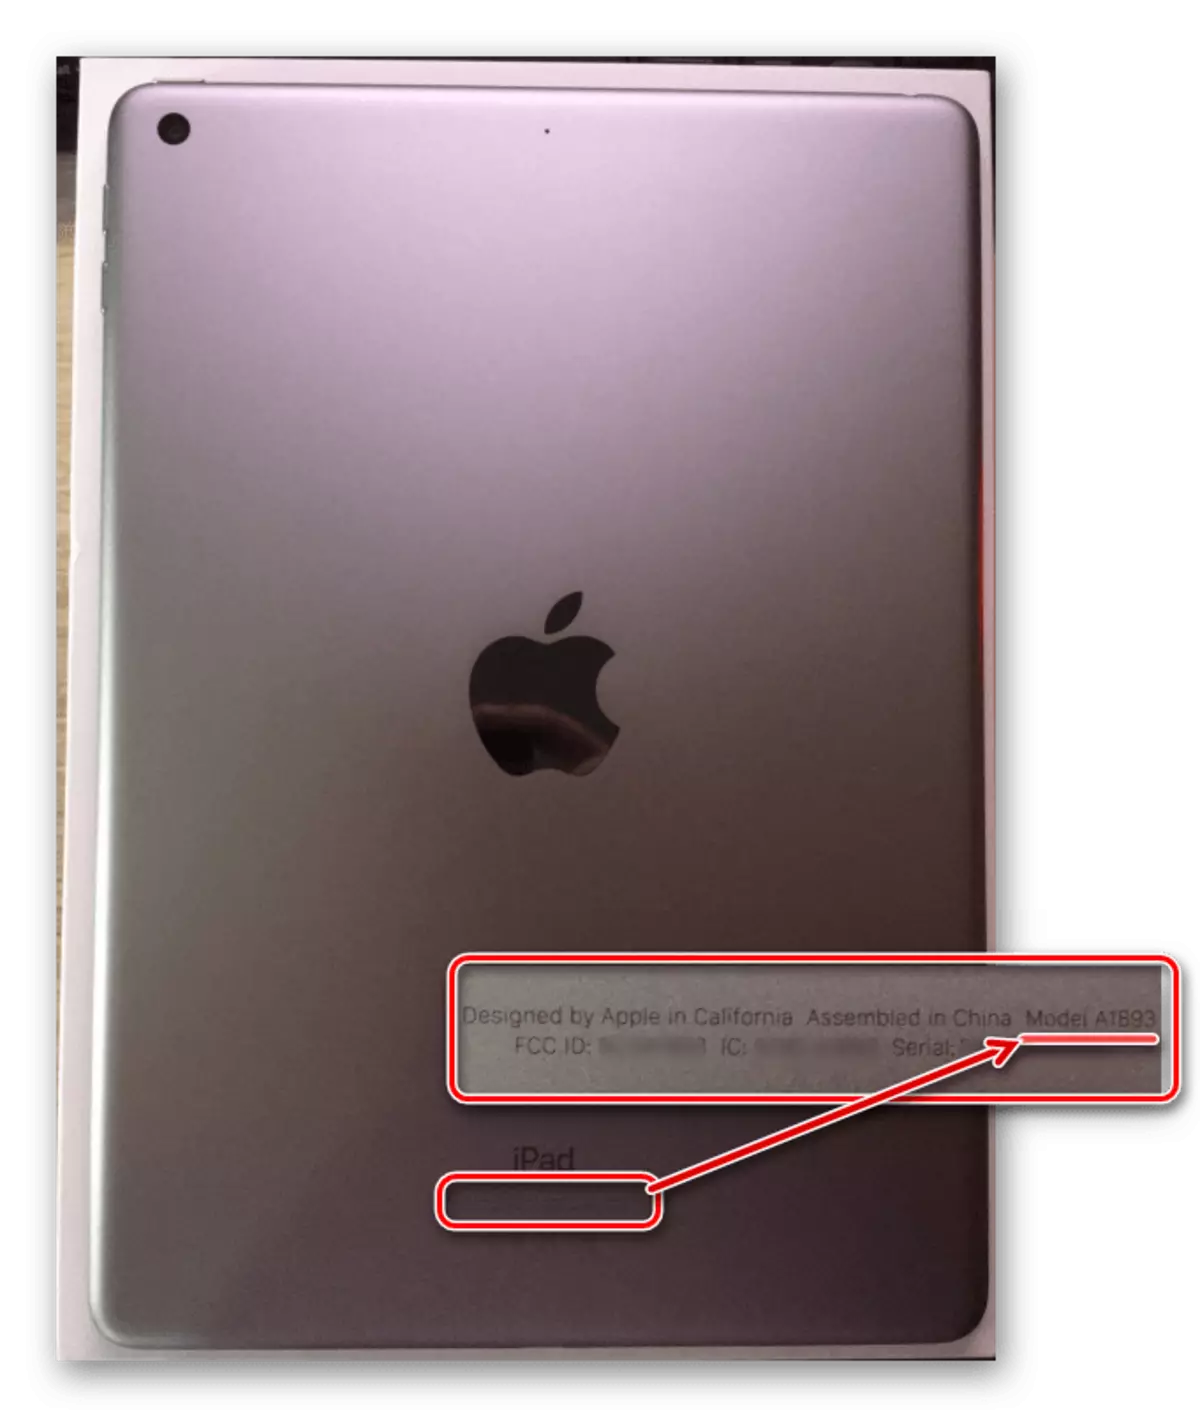 Voir le numéro de modèle iPad sur le dos de l'affaire